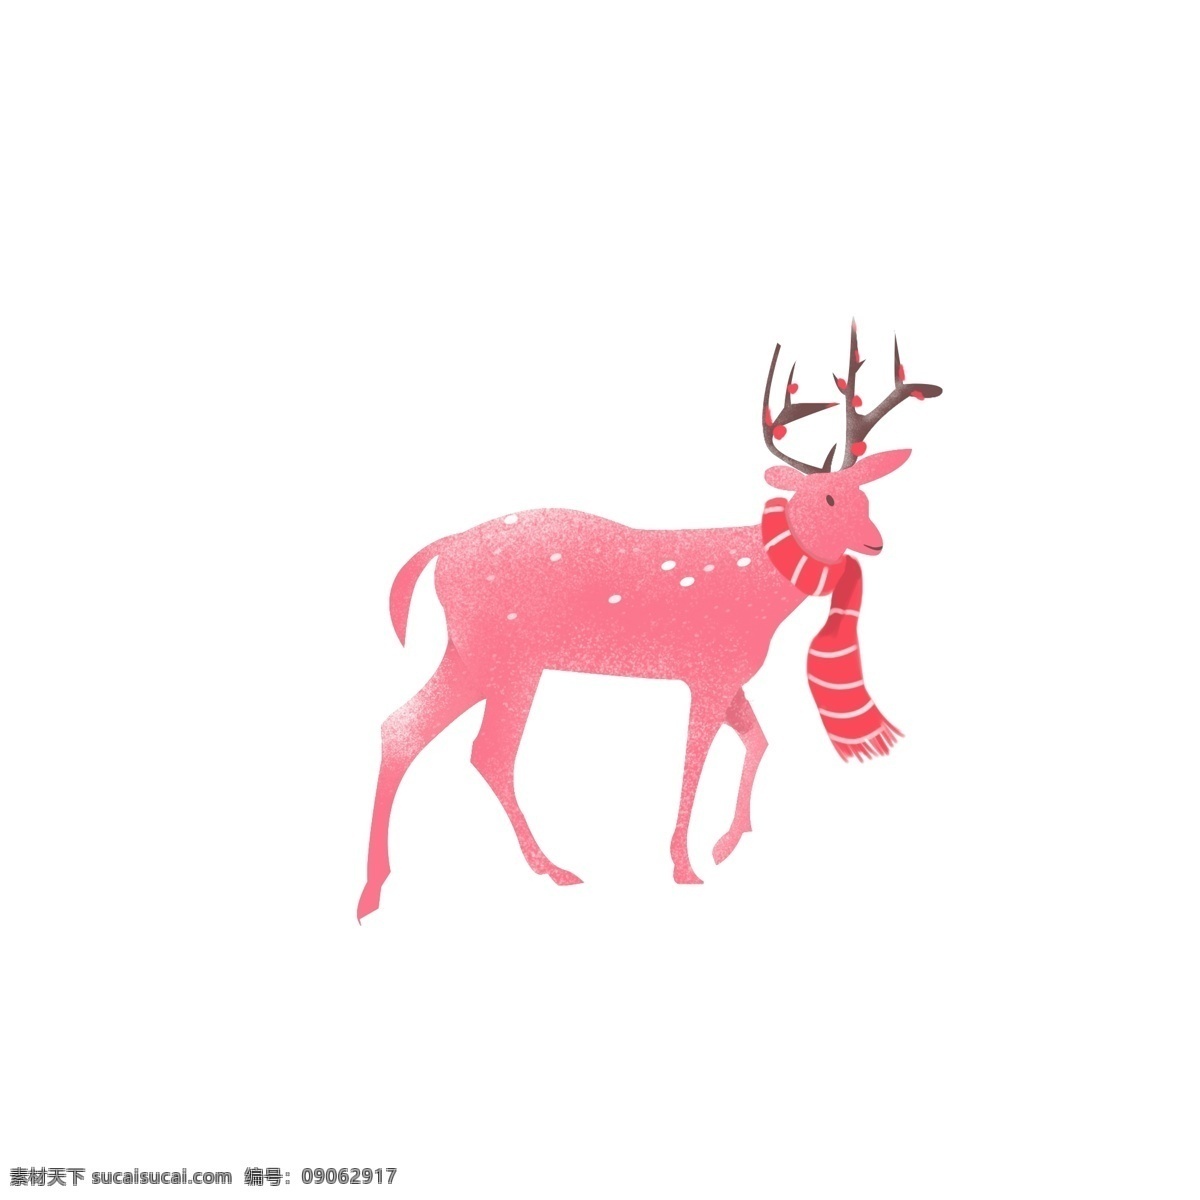 清新 唯美 冬日 大雪 中 麋鹿 冬季 动物 围巾 小鹿 森林动物 冬季动物 卡通手绘 冬日物语